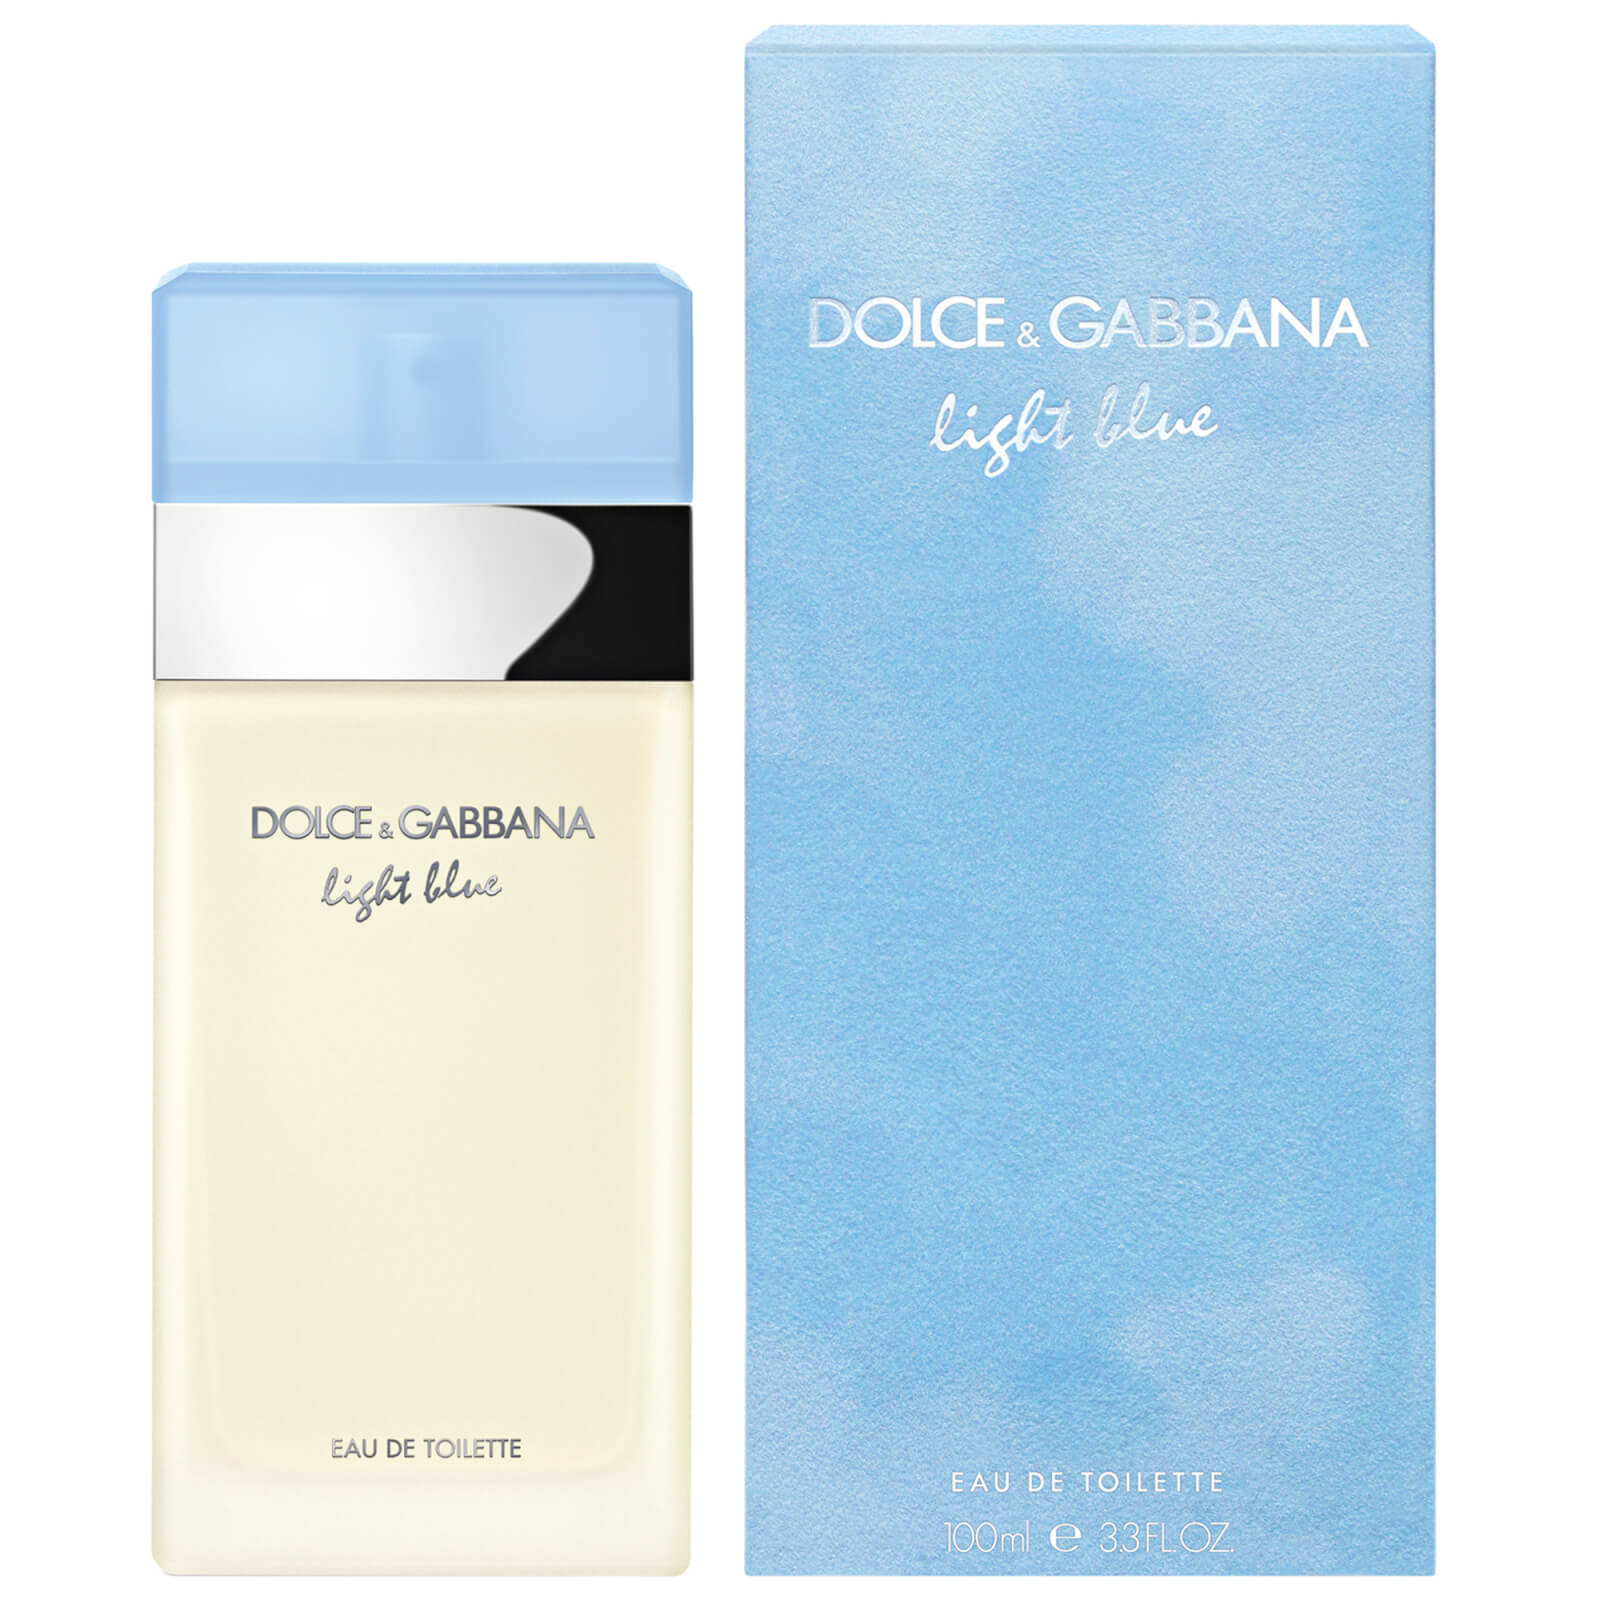 Image of Dolce&Gabbana Light Blue Eau de Toilette 100ml